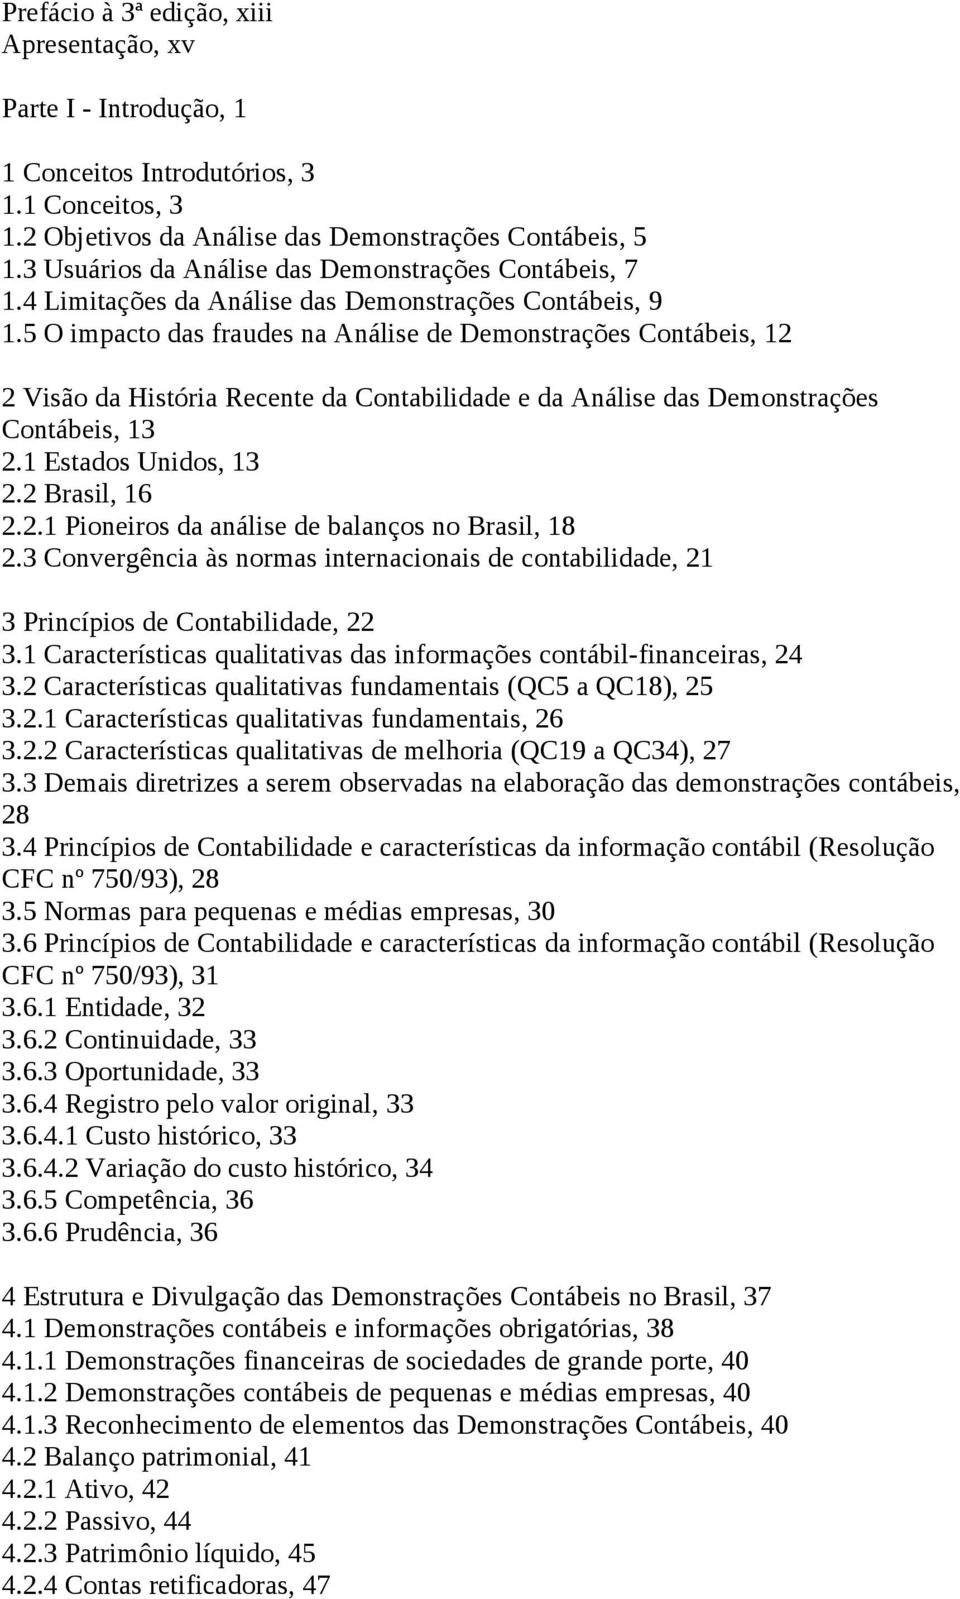 5 O impacto das fraudes na Análise de Demonstrações Contábeis, 12 2 Visão da História Recente da Contabilidade e da Análise das Demonstrações Contábeis, 13 2.1 Estados Unidos, 13 2.2 Brasil, 16 2.2.1 Pioneiros da análise de balanços no Brasil, 18 2.